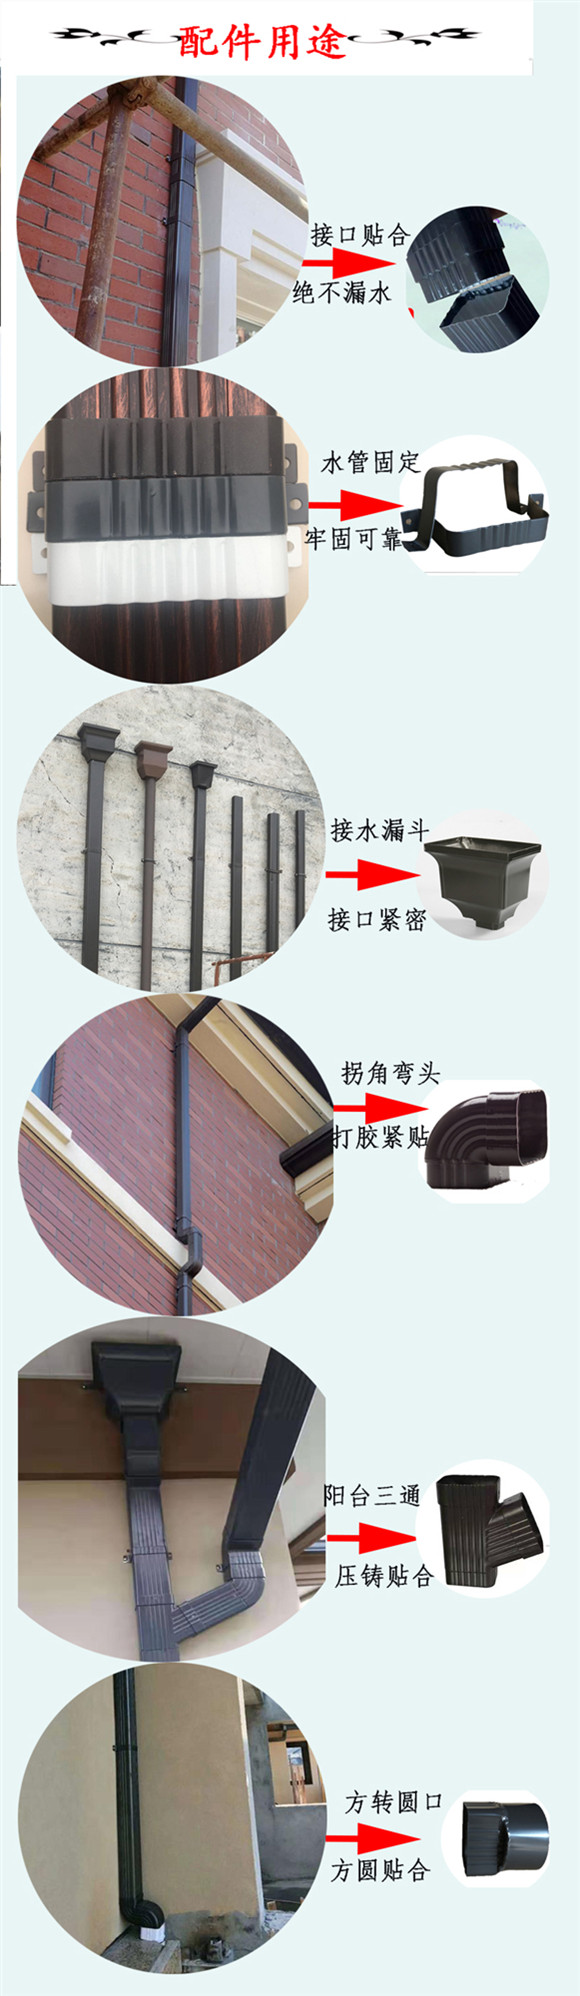 呼伦贝尔方形雨水管优质商品杭州飞拓建材